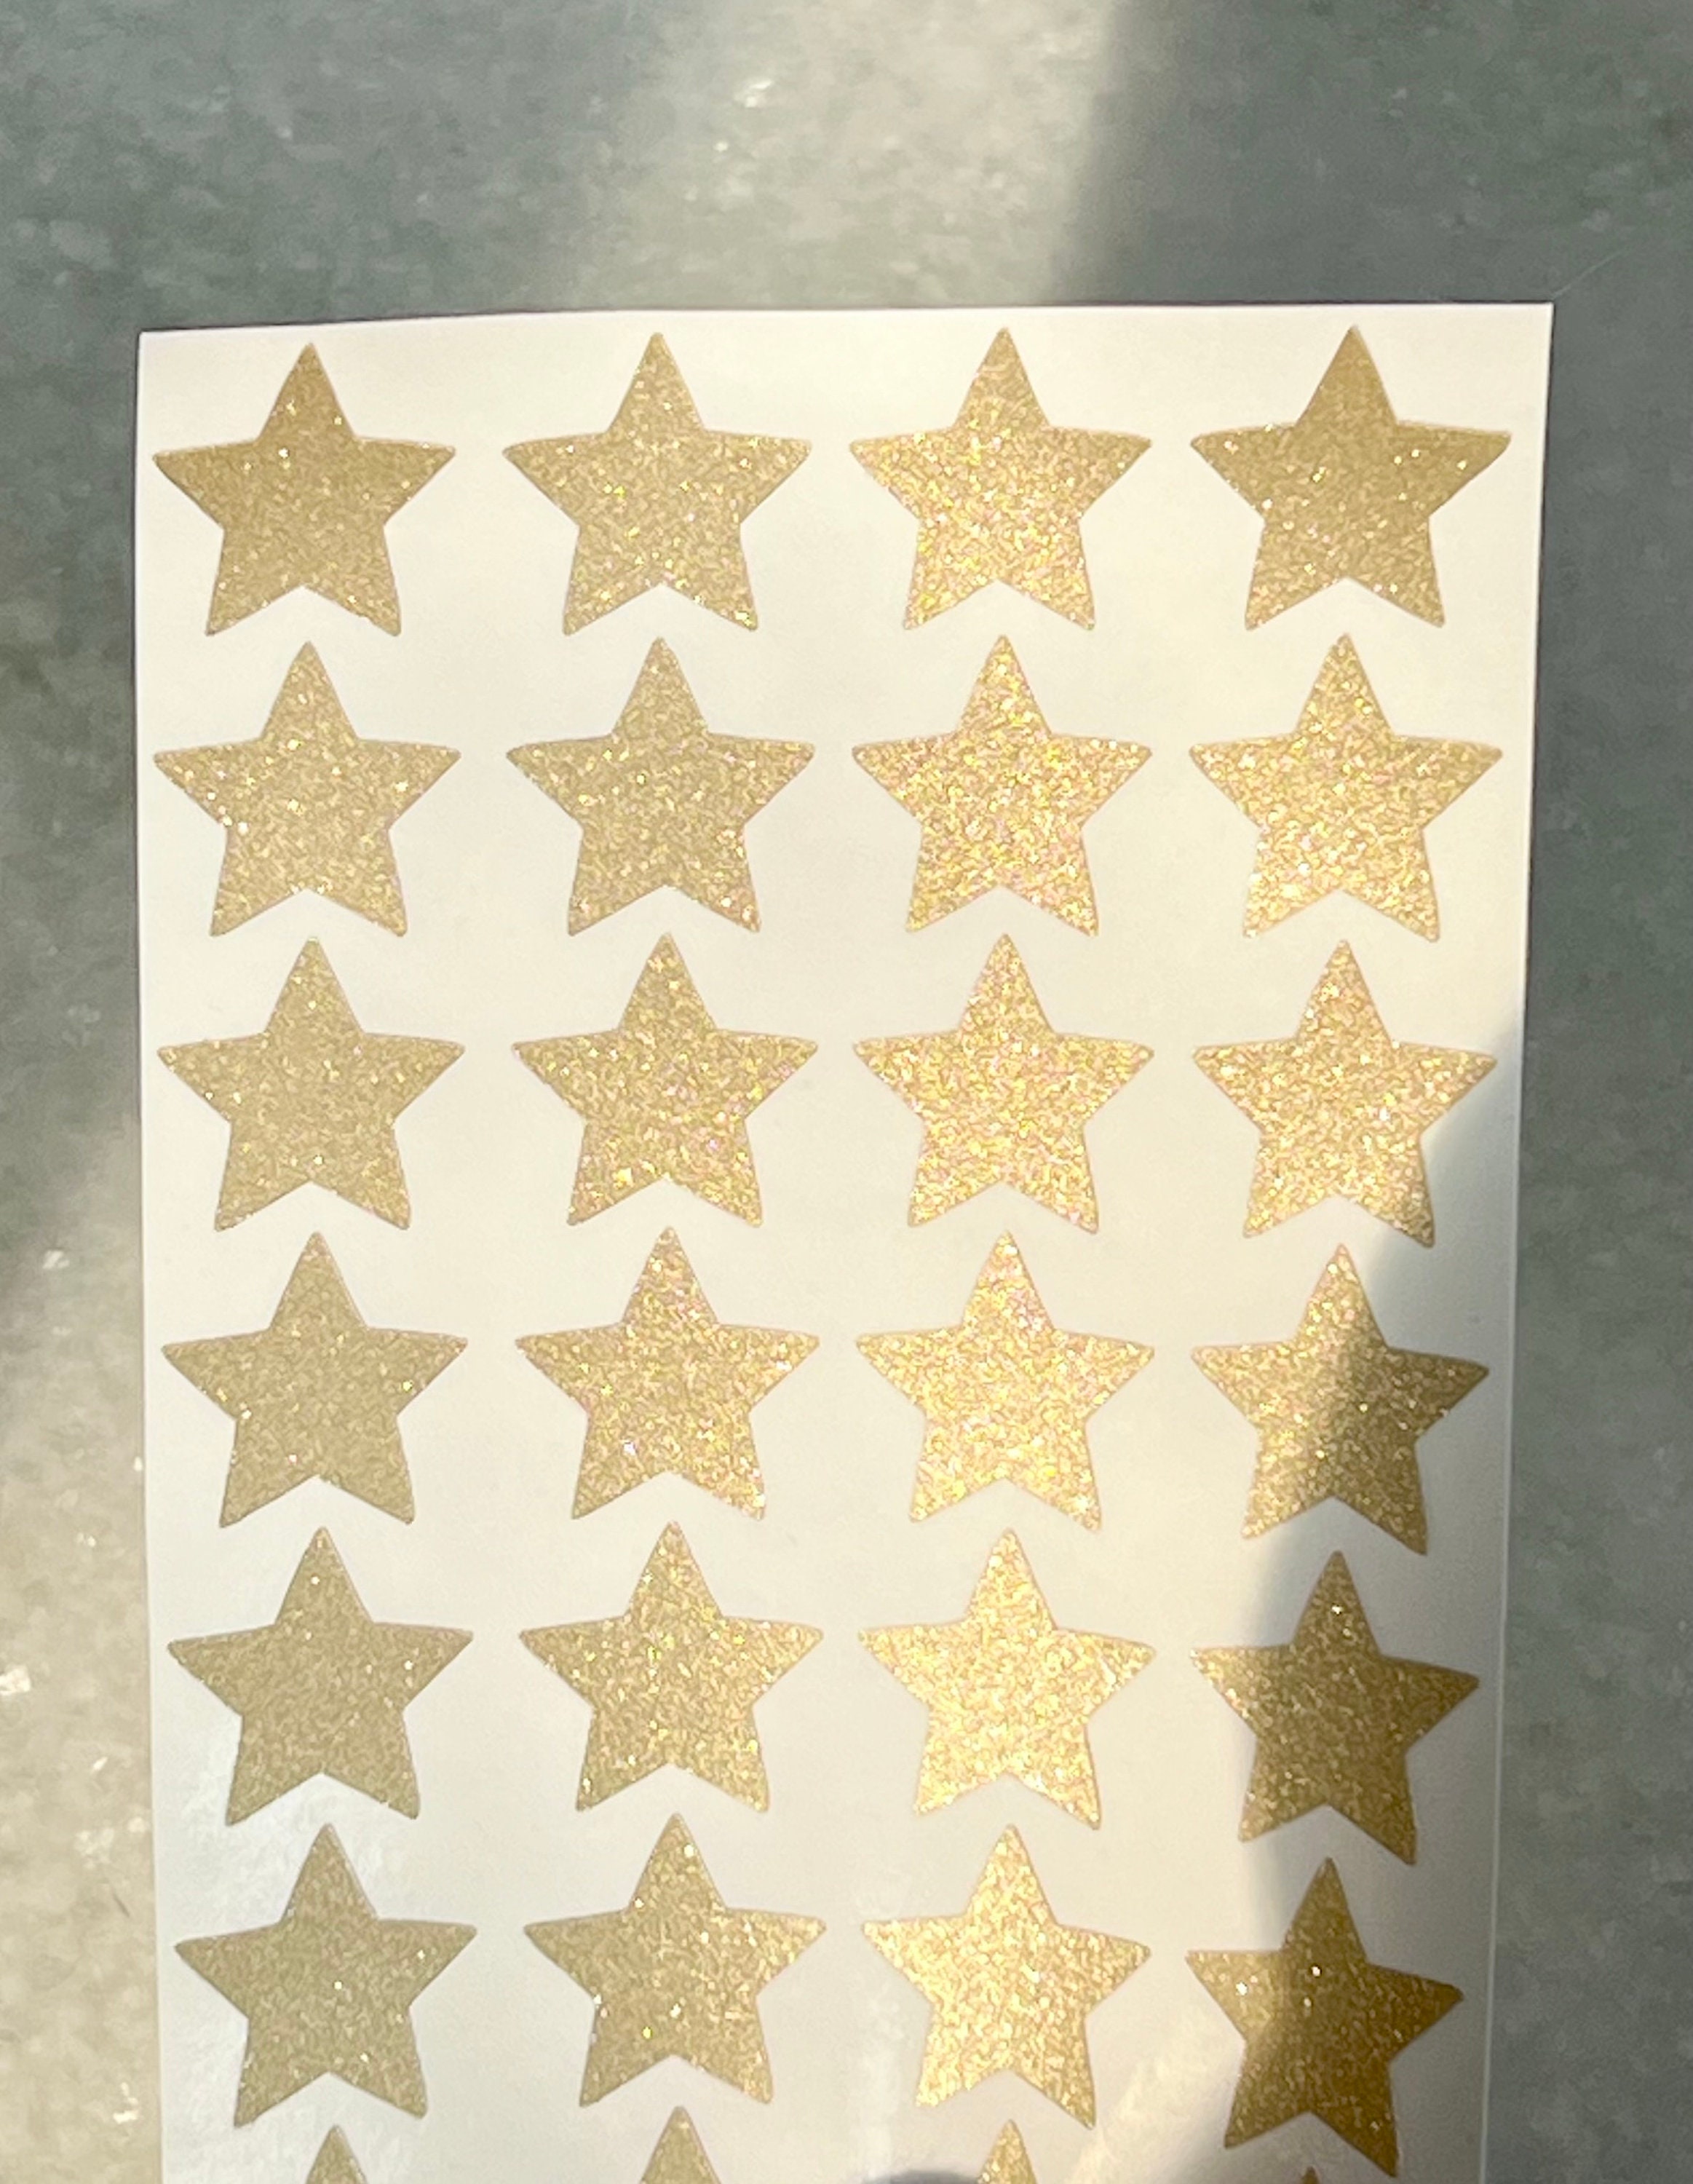 350 Sterne Sticker Aufkleber Glitzernd Funkelnd - gold